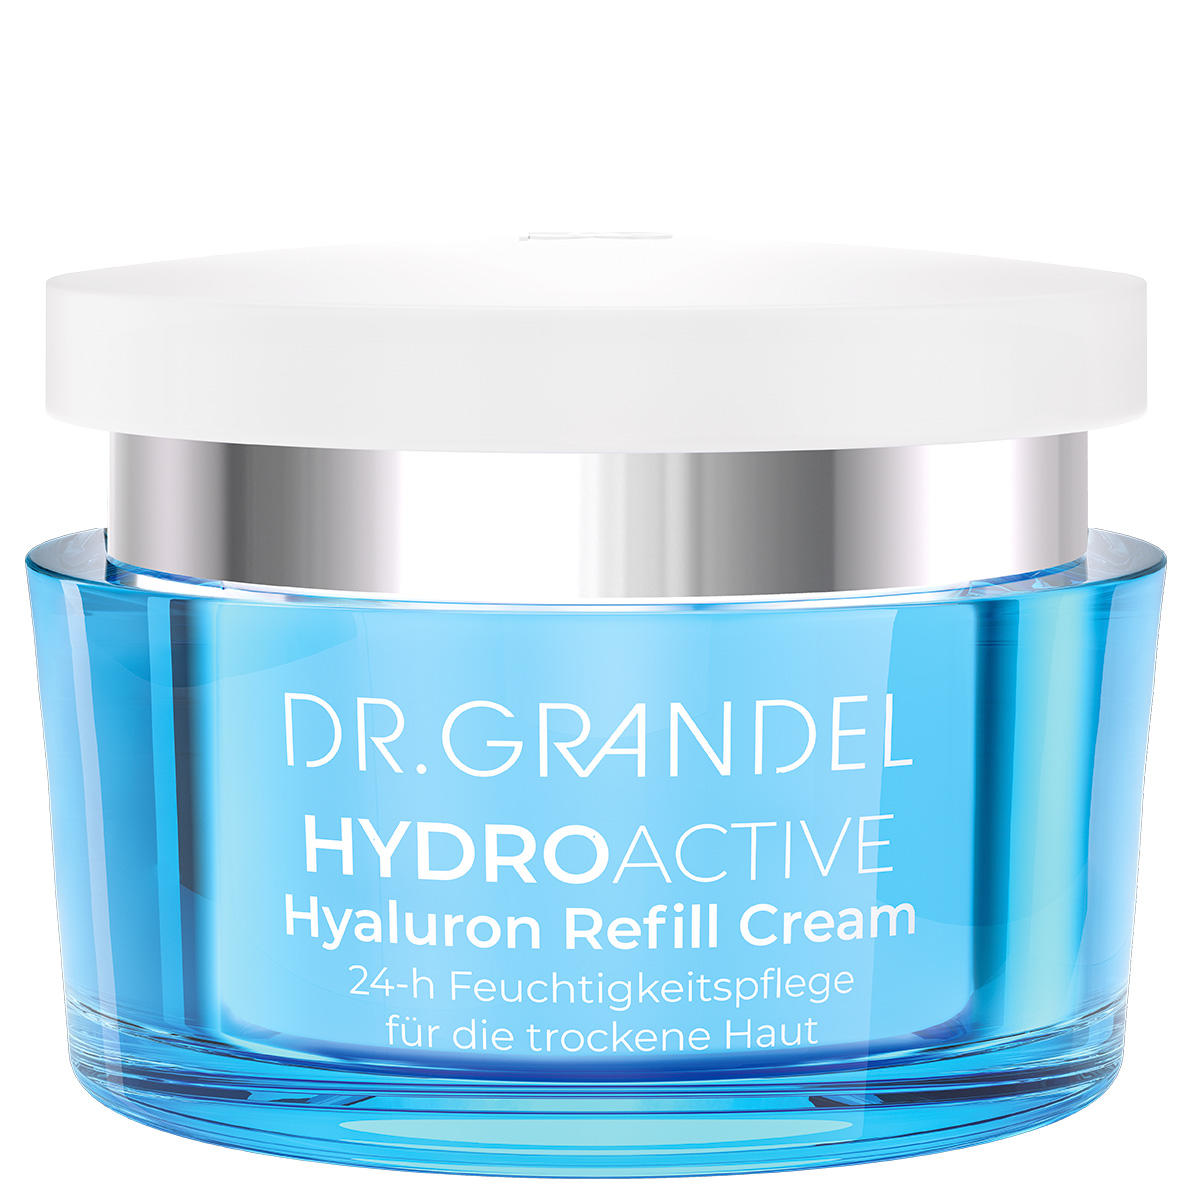 DR. GRANDEL Hydro Active Hyaluron Refill Cream 50 ml - 1